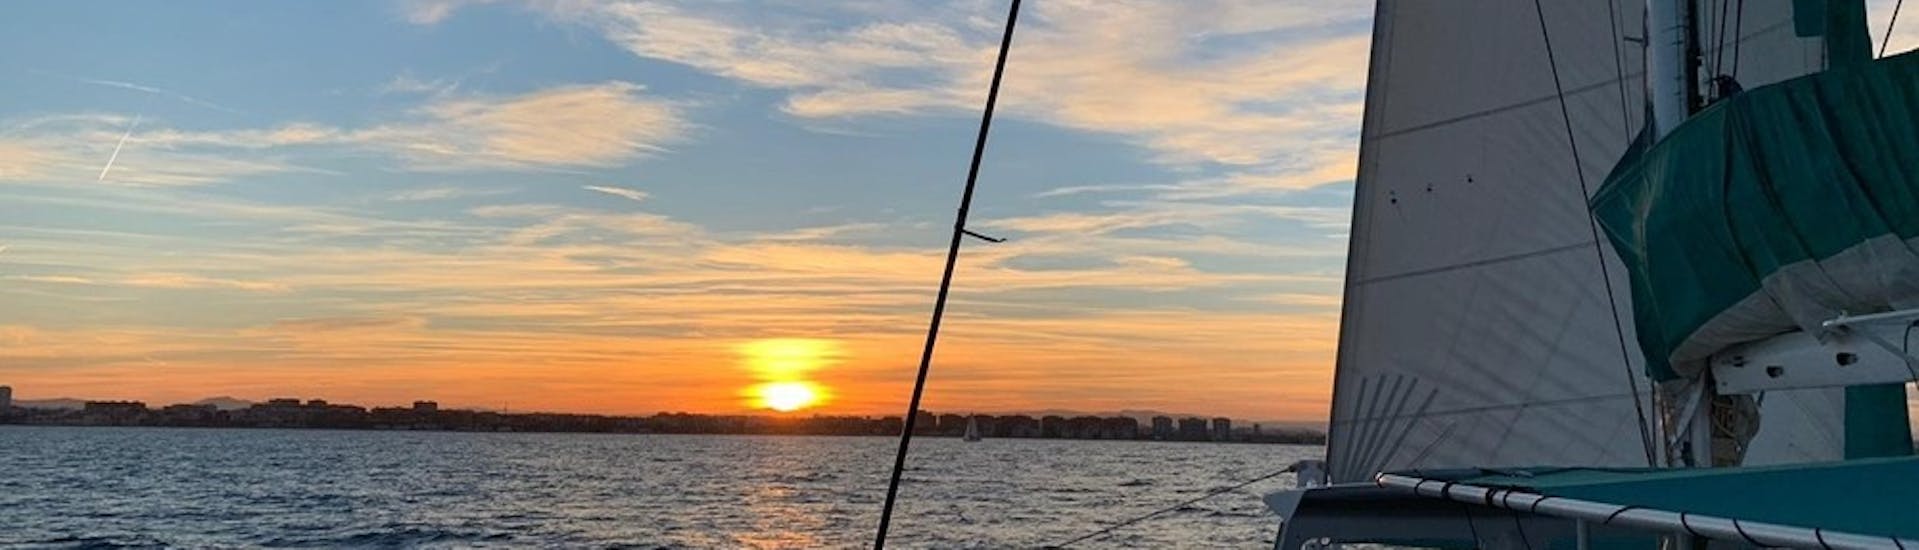 Uitzicht op de zonsondergang op de Middellandse Zee tijdens een catamarantocht in Valencia met Mundo Marino.